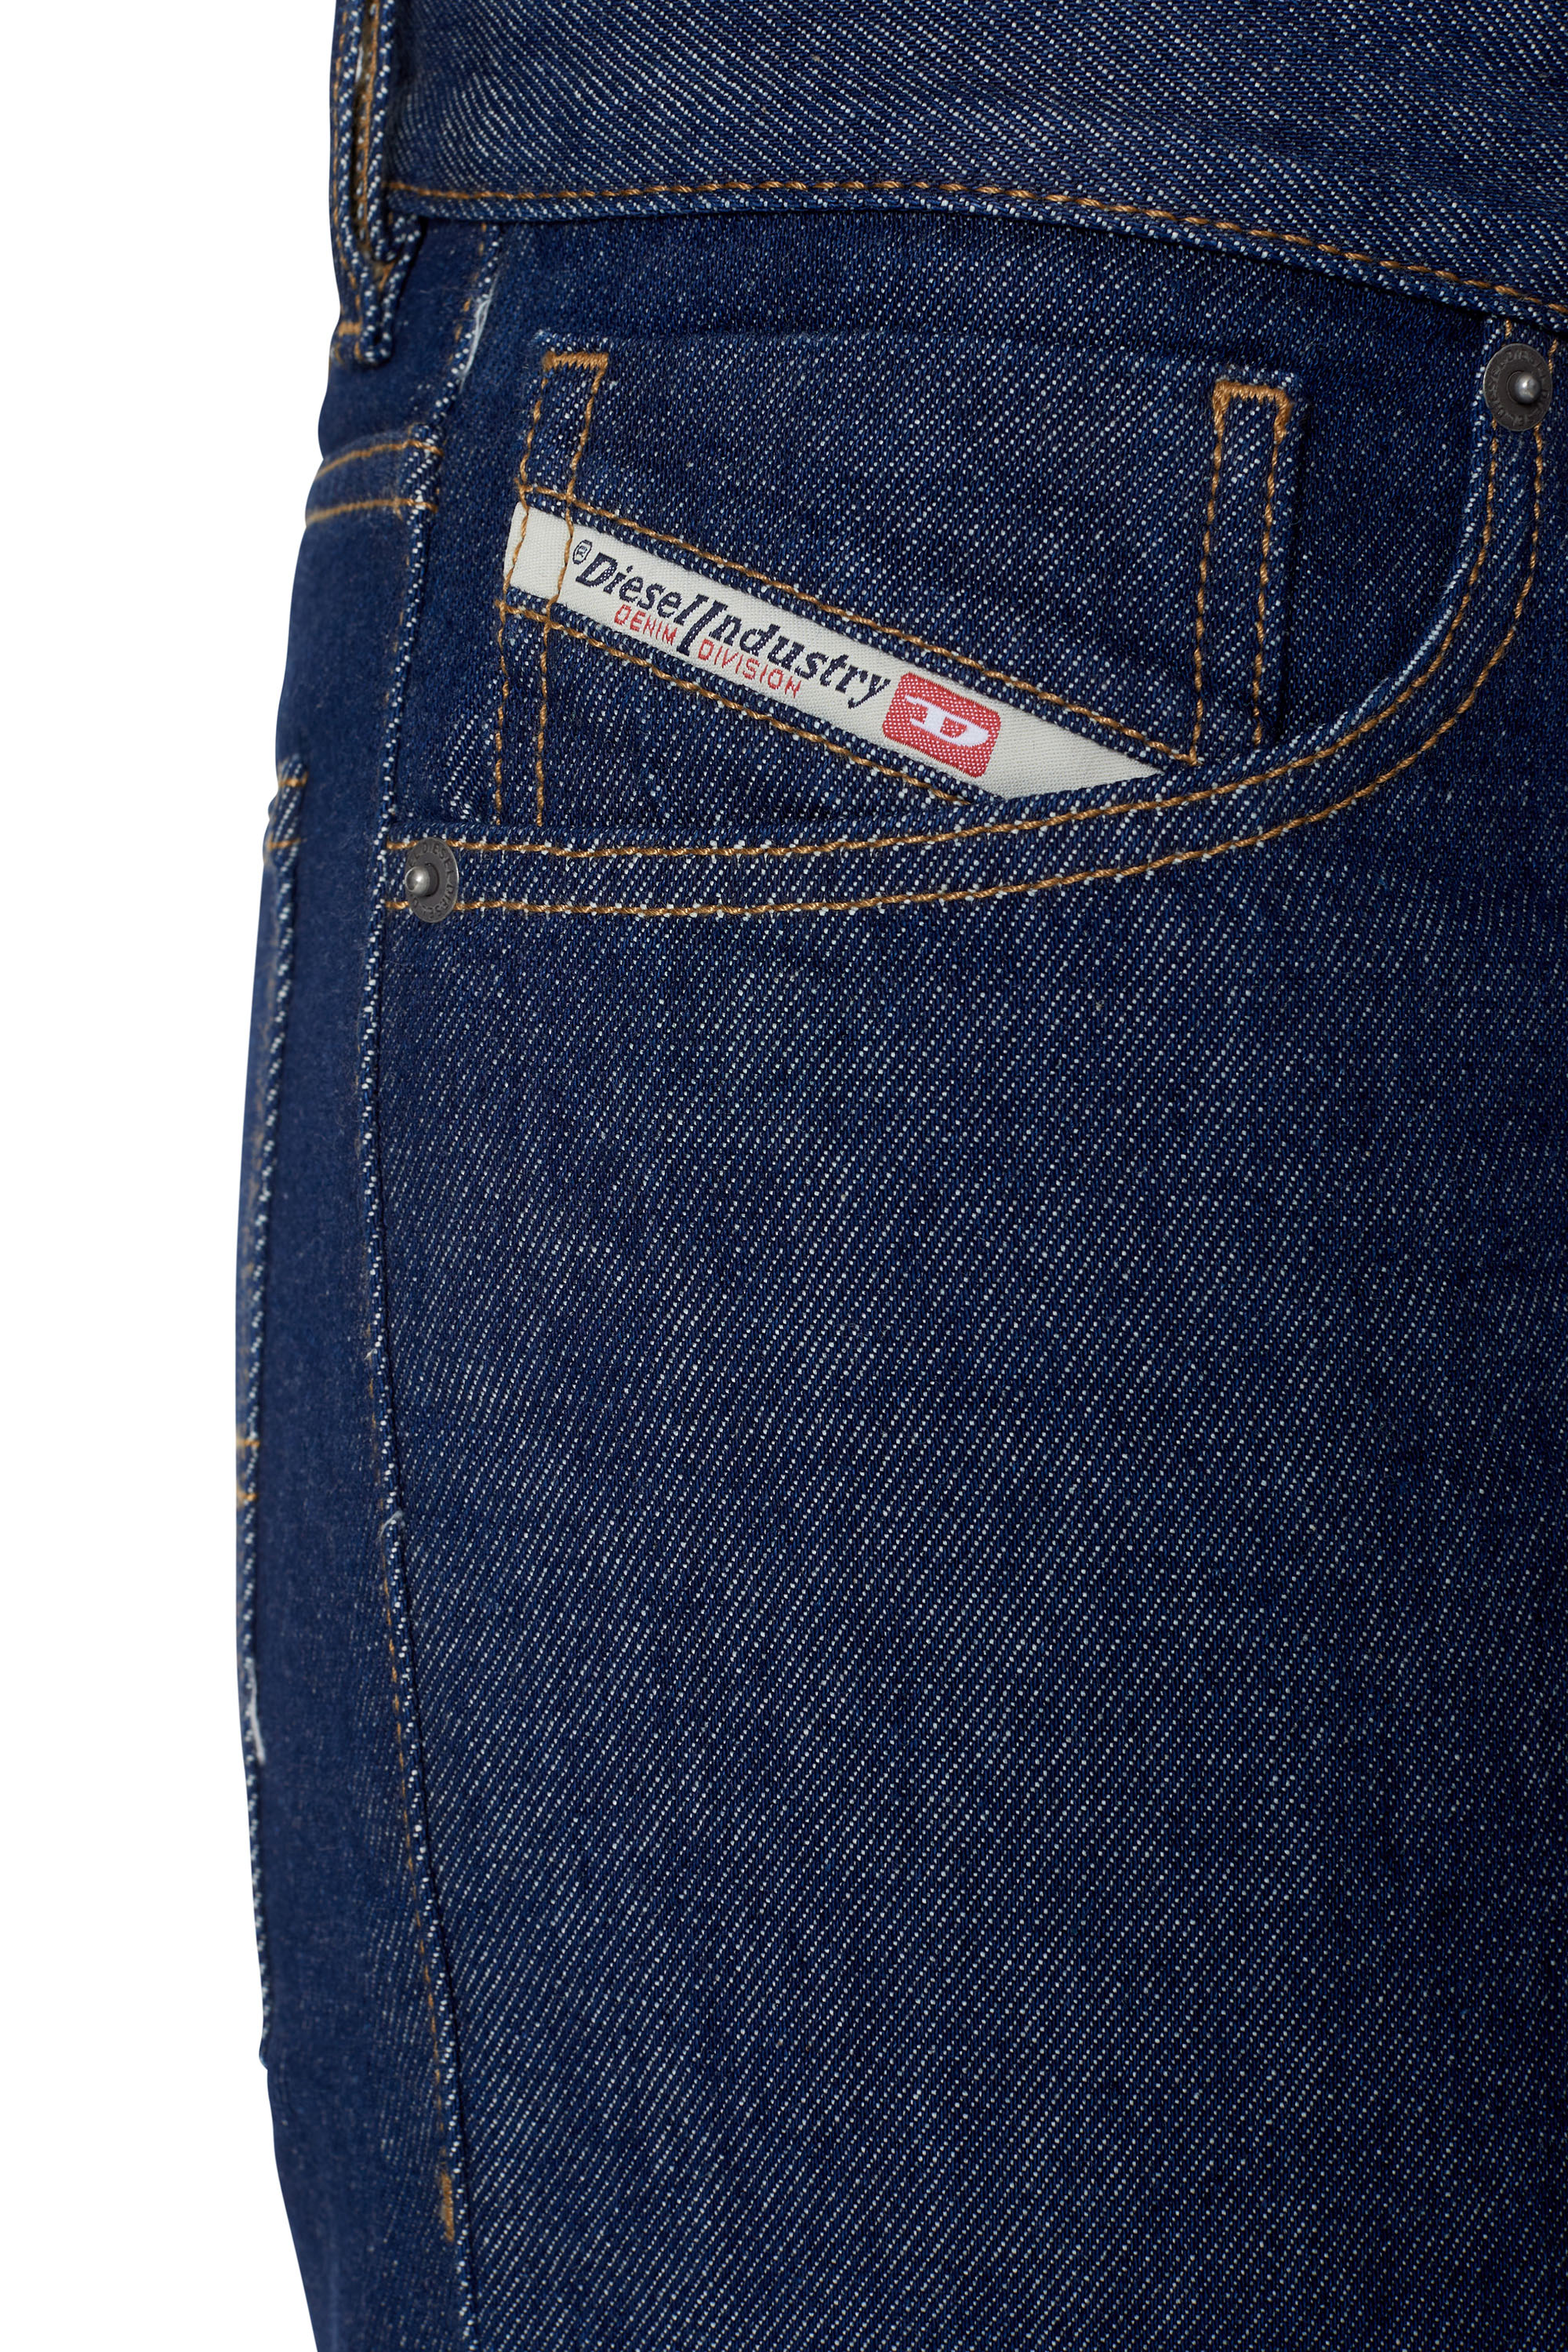 kanal Besøg bedsteforældre forhøjet Men's Straight Jeans: D-Macs, Larkee, Safado | Diesel